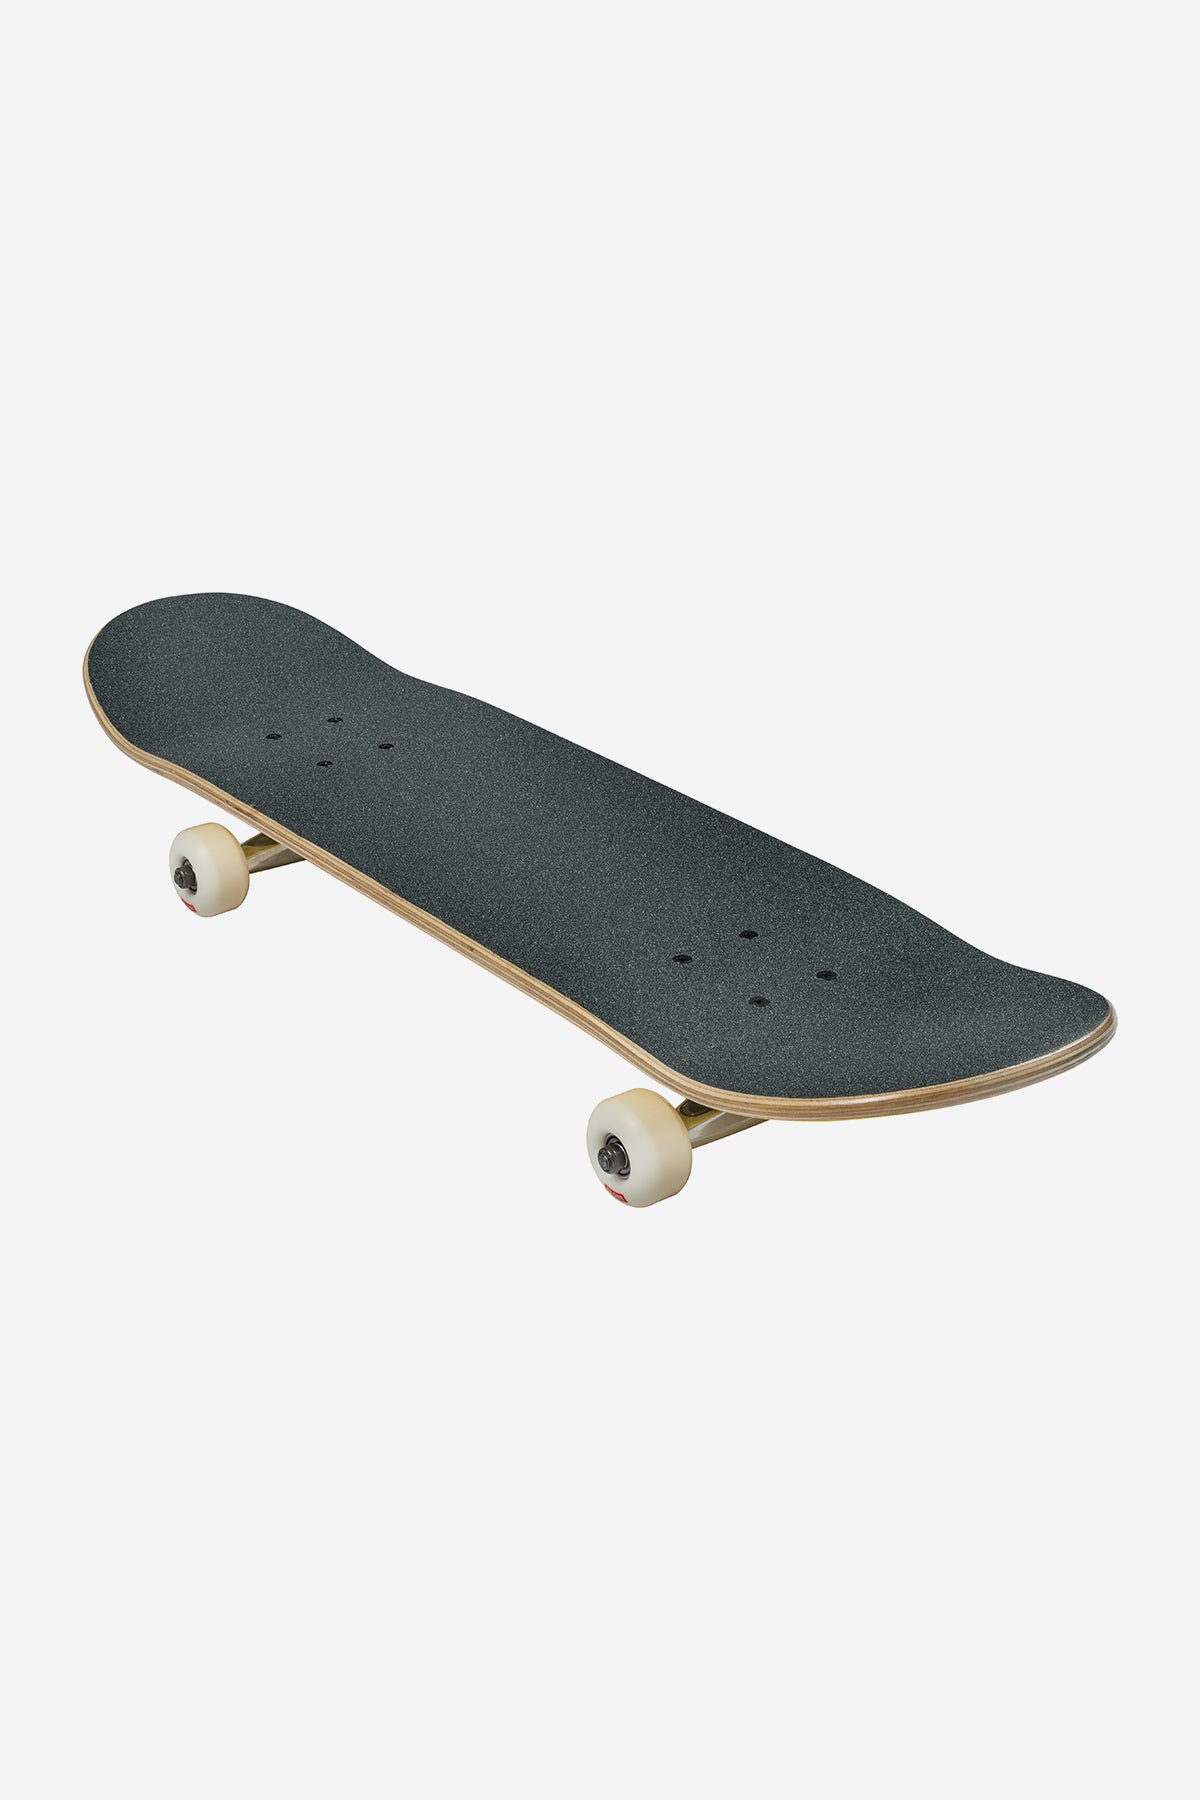 Globe - Goodstock - Aus White - 8.0" Komplett Skateboard